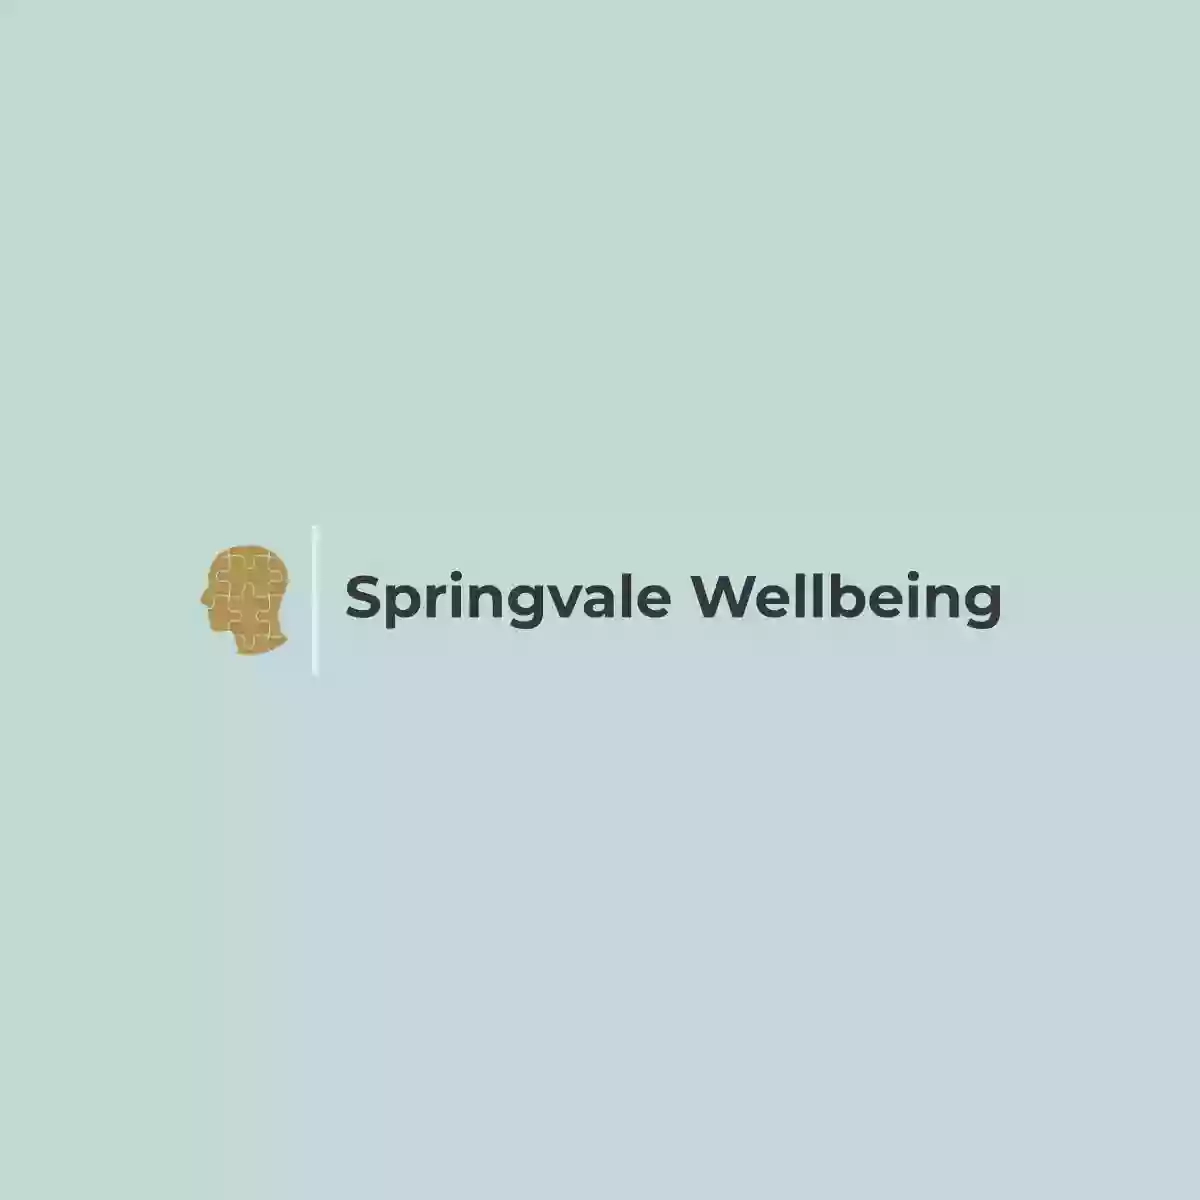 Springvale Wellbeing